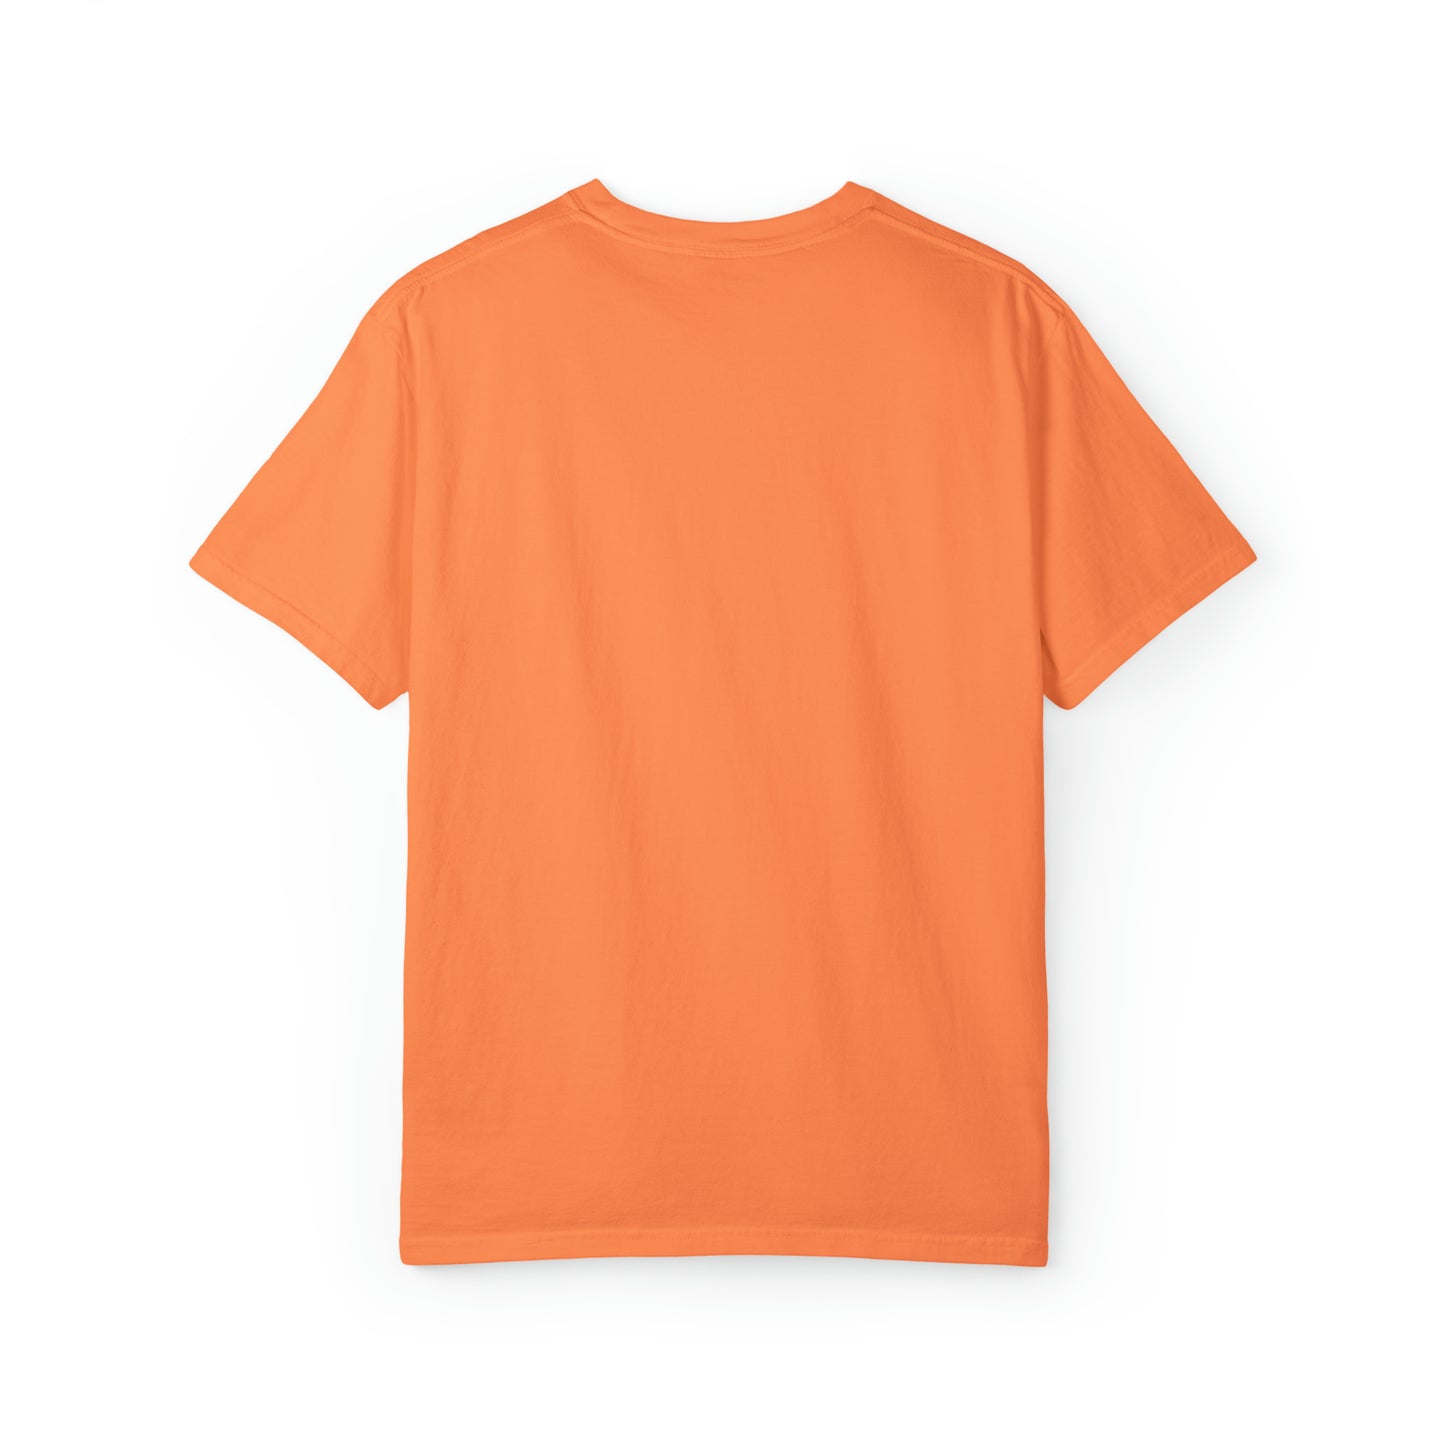 Reel Cool Papa: camiseta elegante inspirada en la pesca para papás